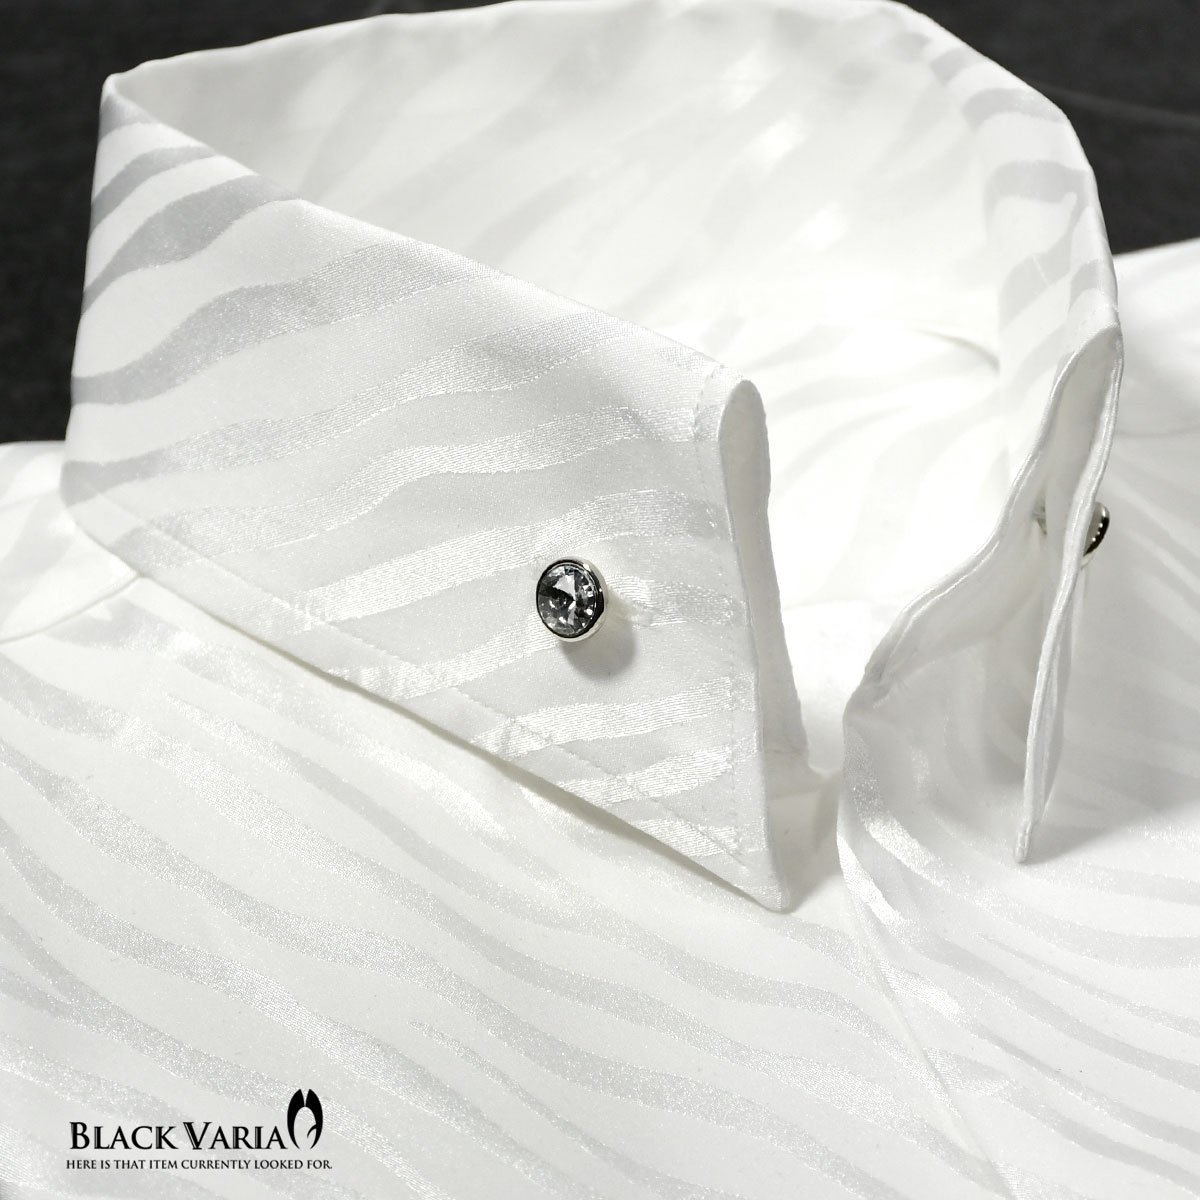 181724-wh BlackVaria サテンシャツ ドレスシャツ スキッパー ゼブラ柄 ジャガード ボタンダウン スリム メンズ(ホワイト白) L パーティー_画像1